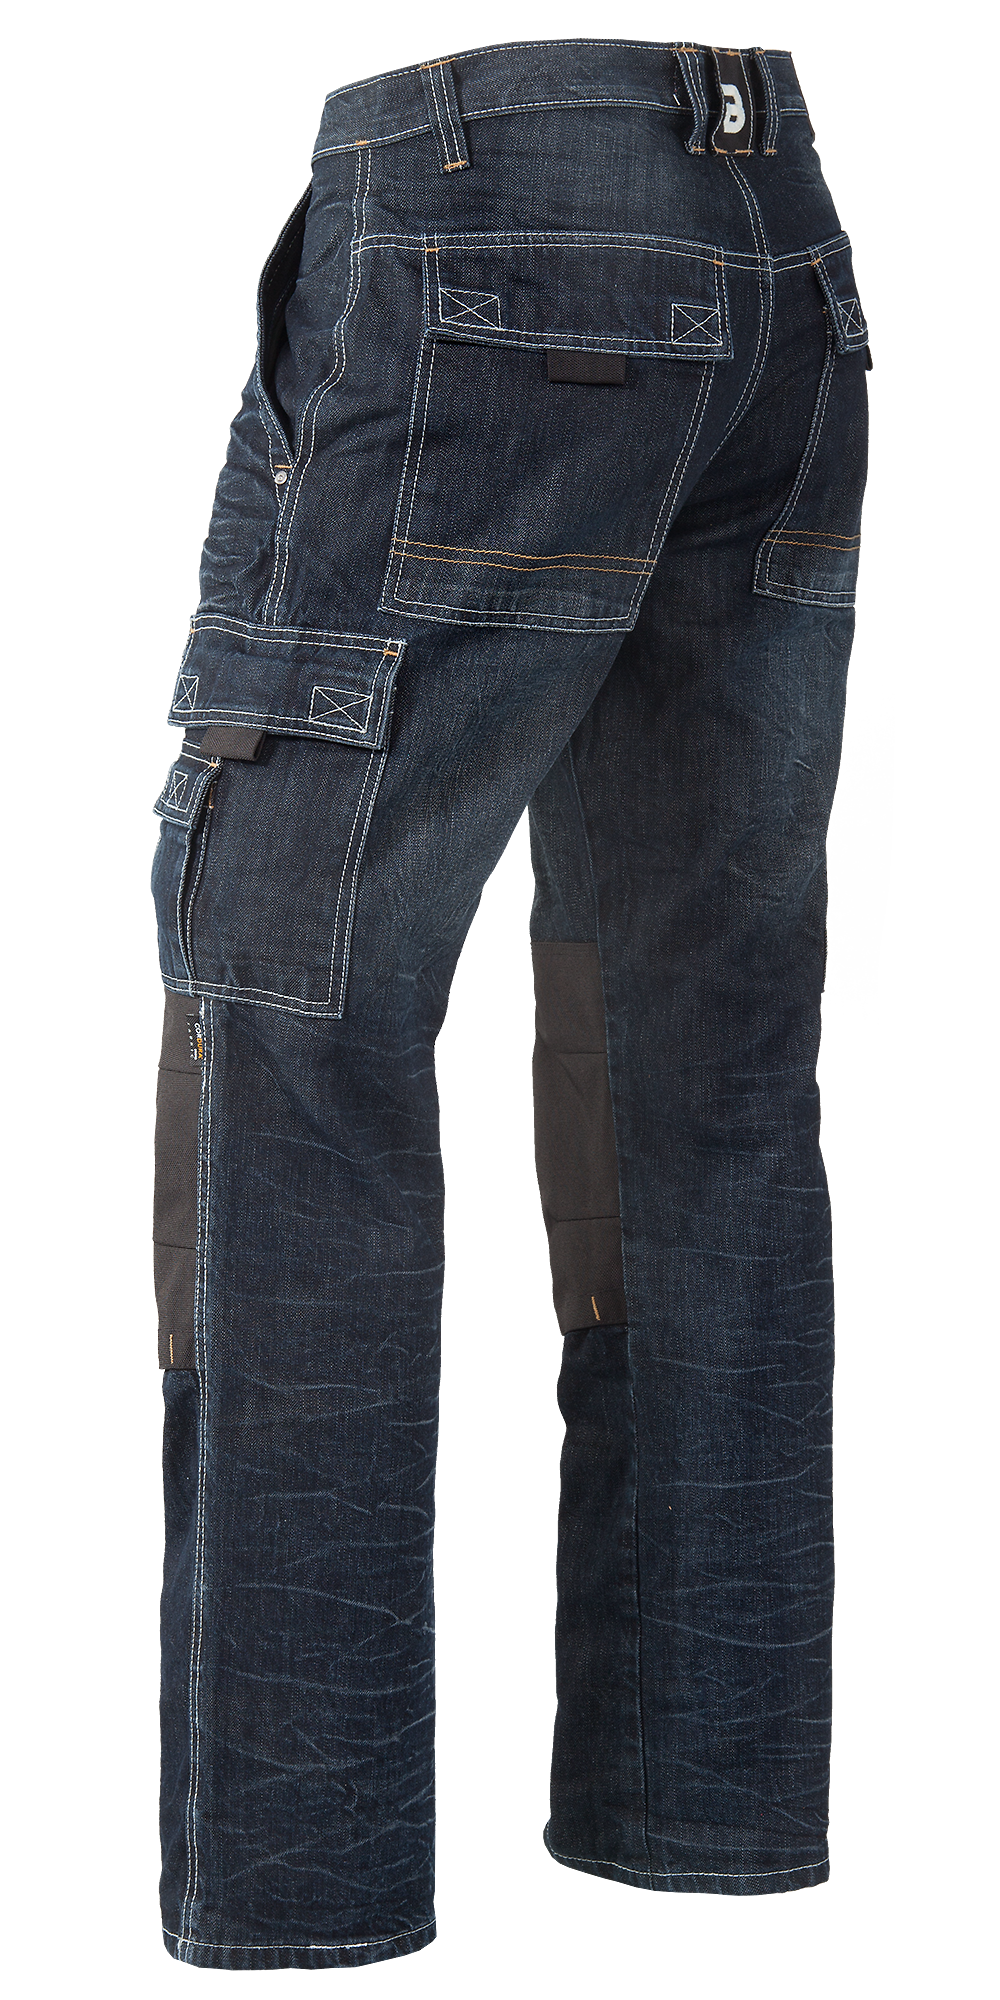 Arbeitshosen Jeans in Black Denim | Jeans | Produkte | Hotel-Uniform